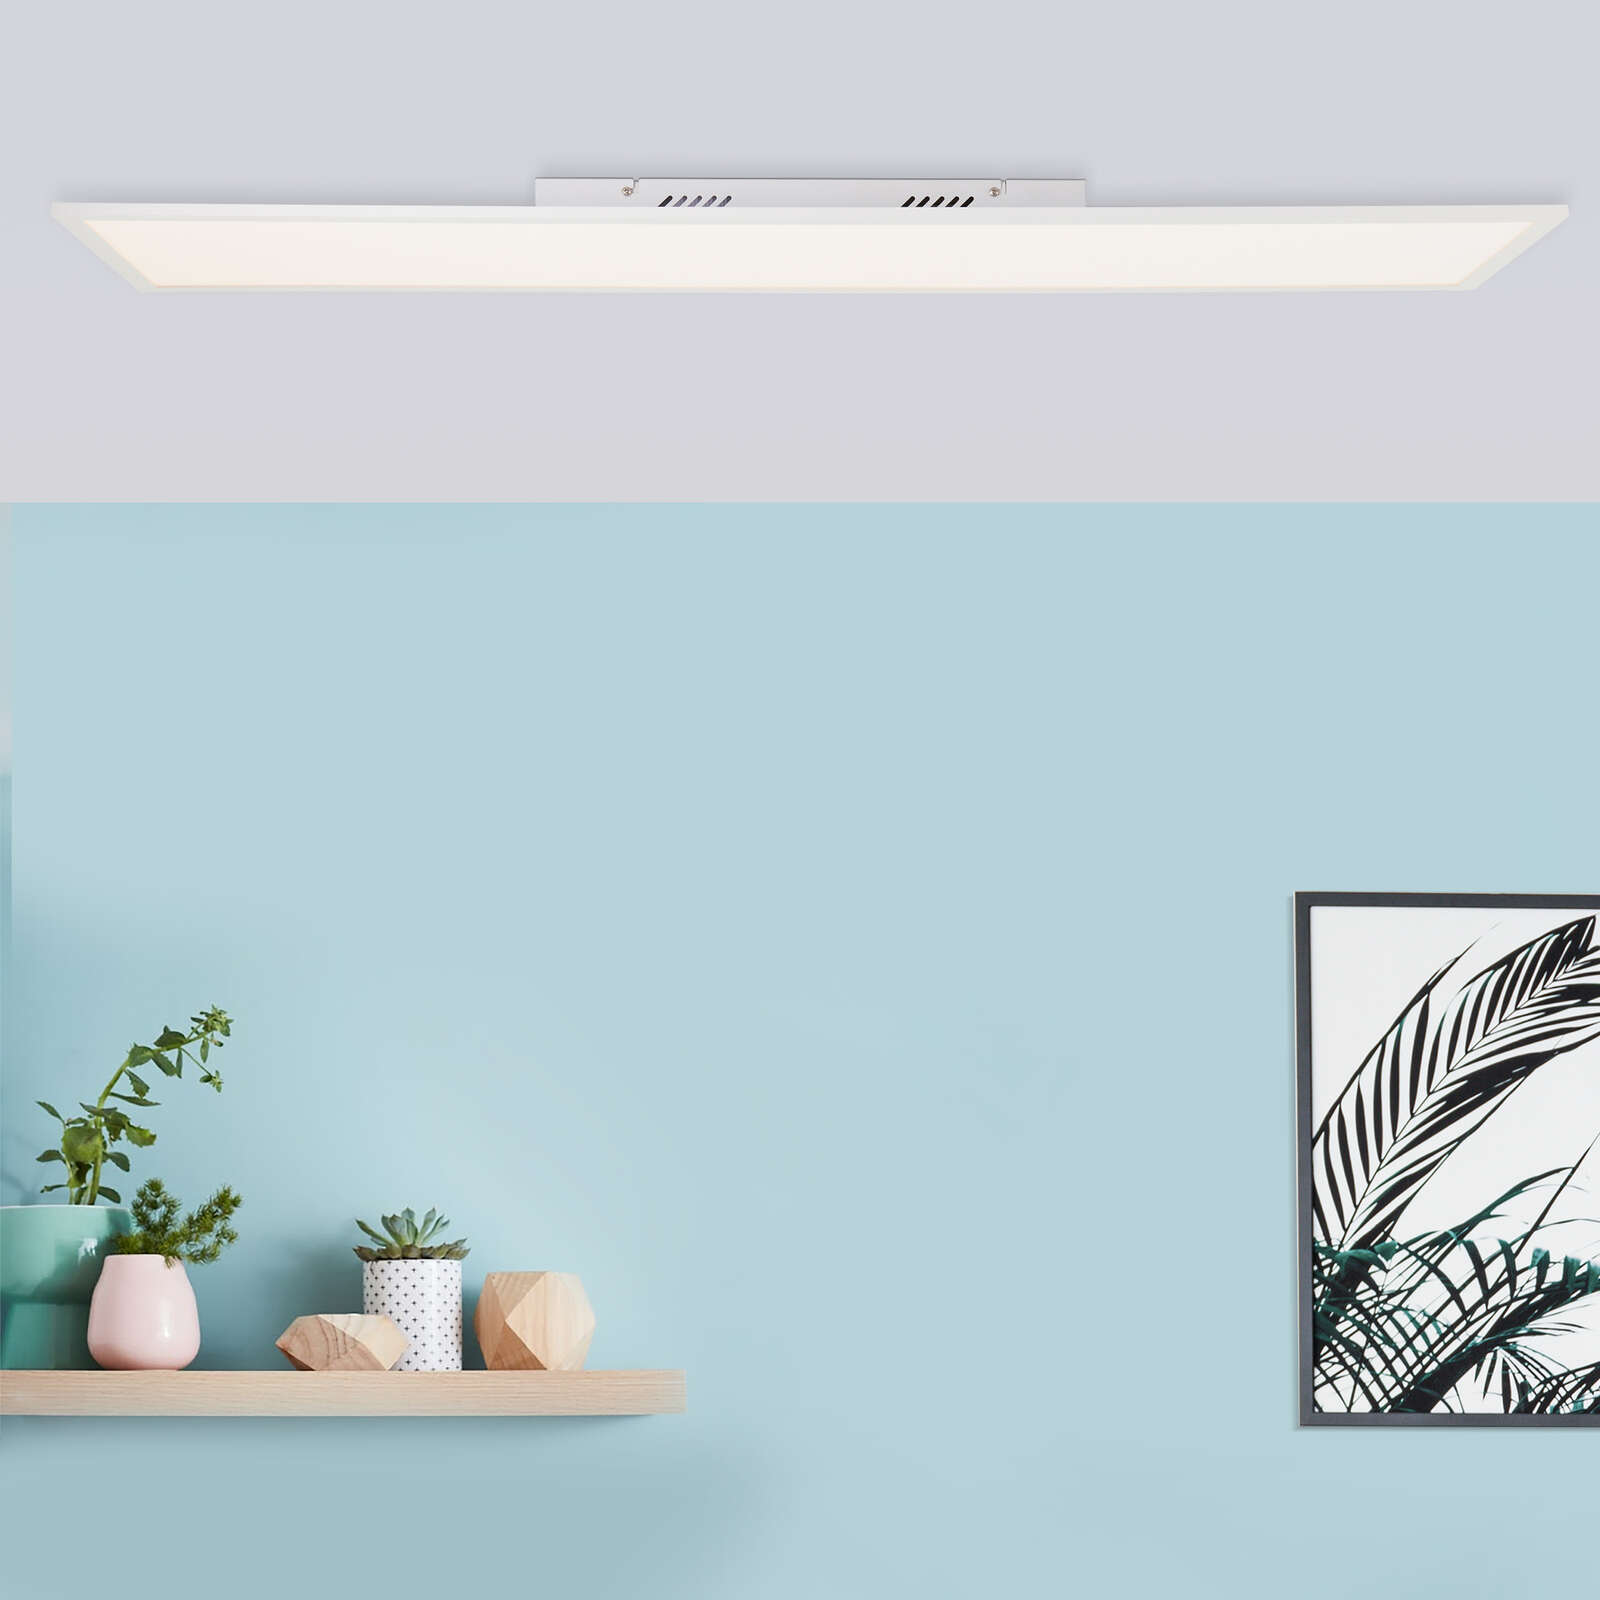             Plastic ceiling light - Jolien 4 - White
        